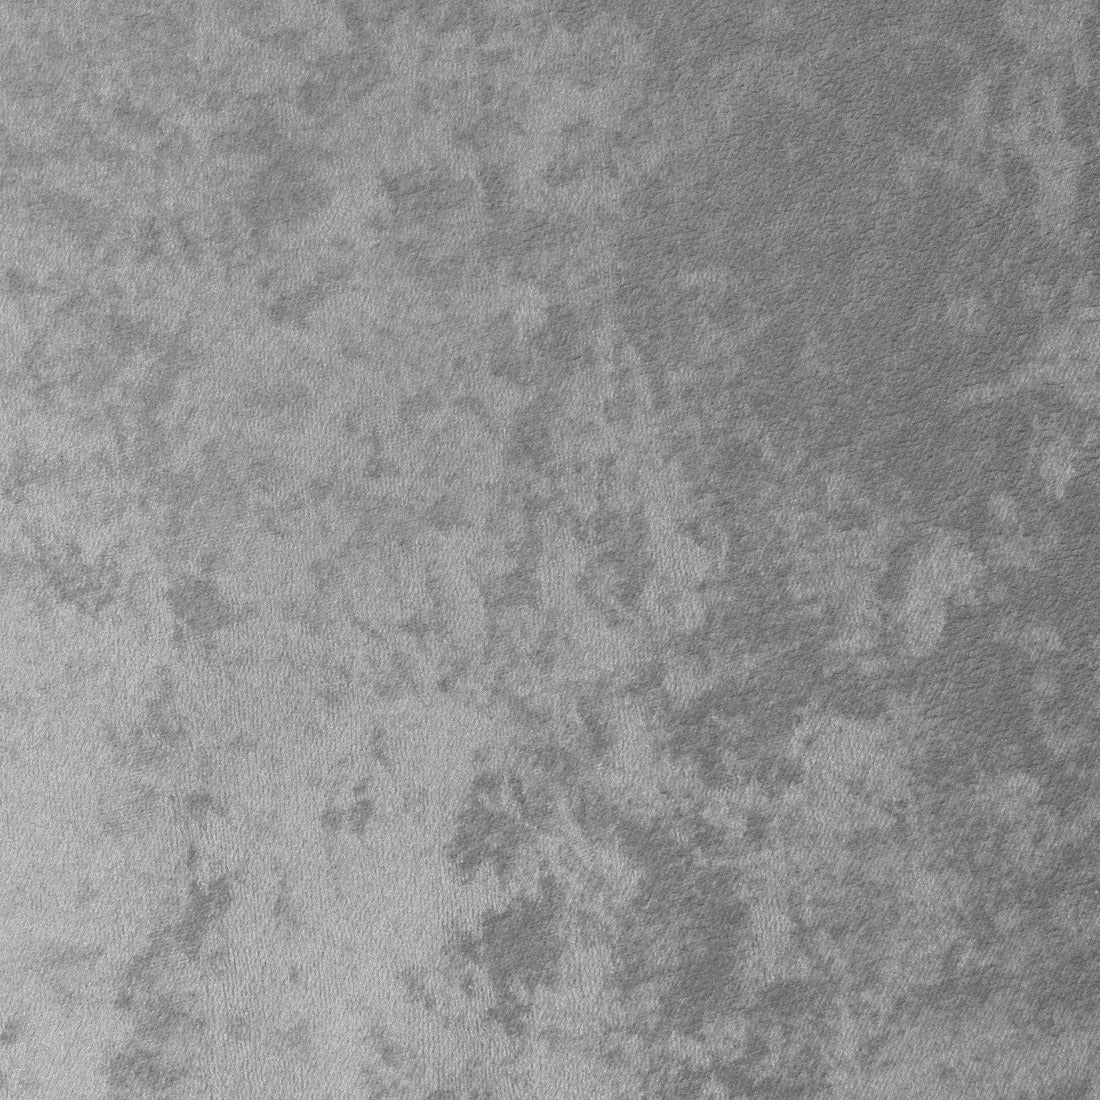 Bar stool Eichholtz Cooper light grey velvet